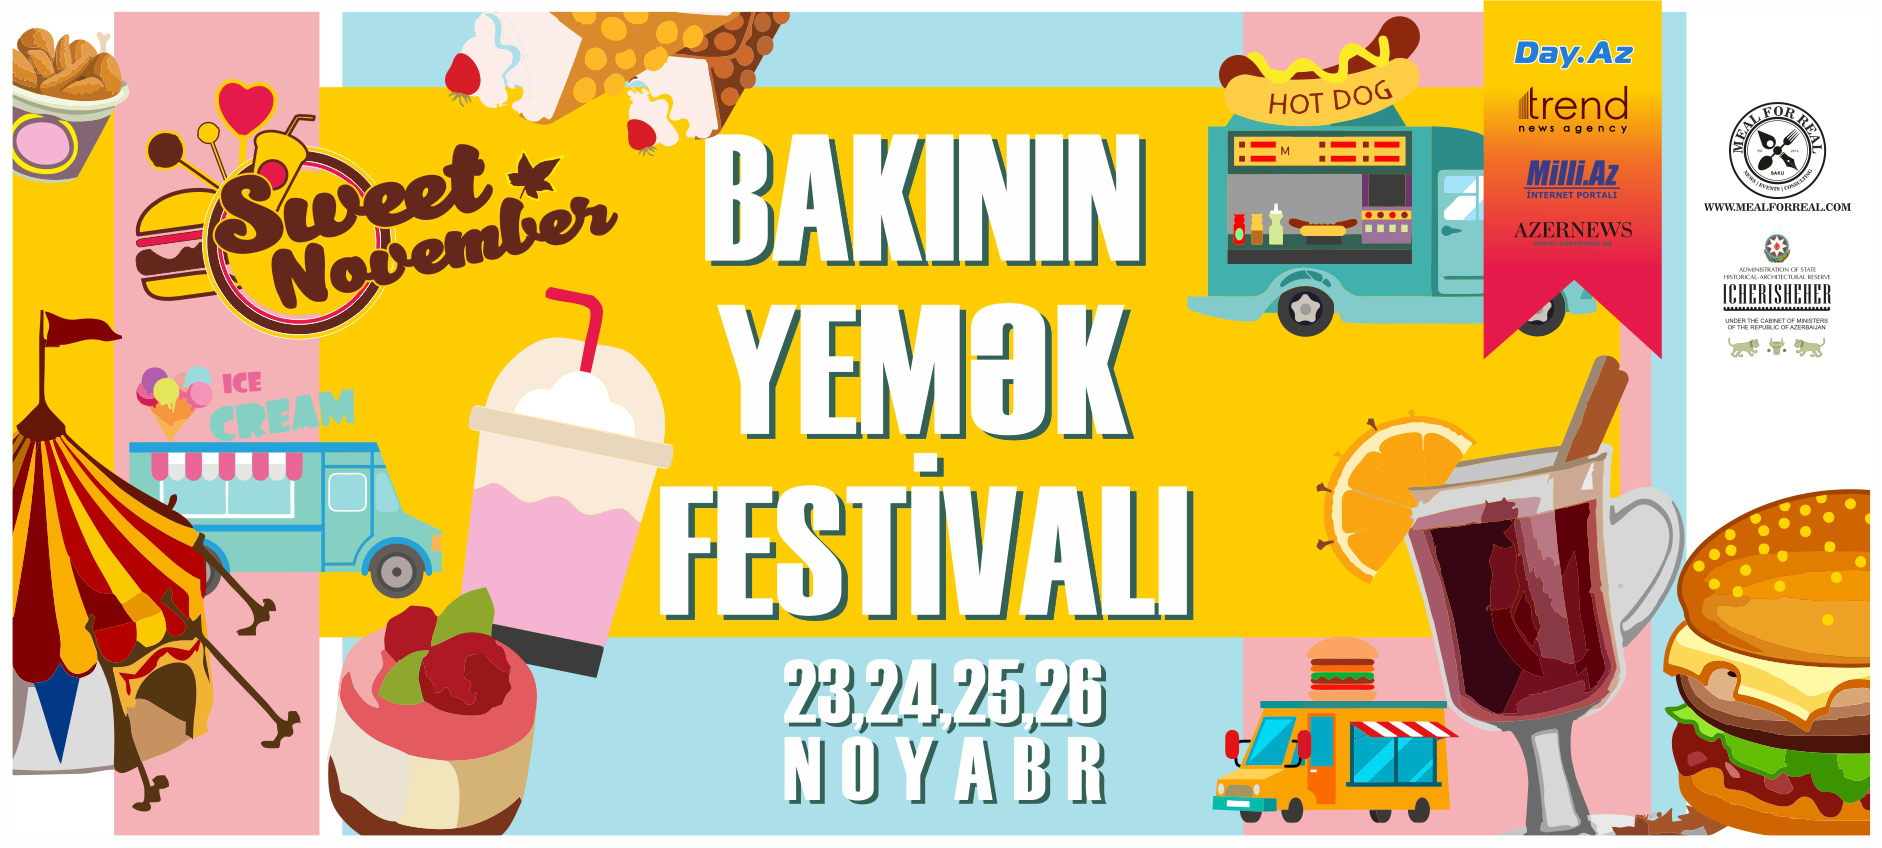 Съешь, сколько сможешь! В Баку пройдет уникальный фестиваль "Sweet November"